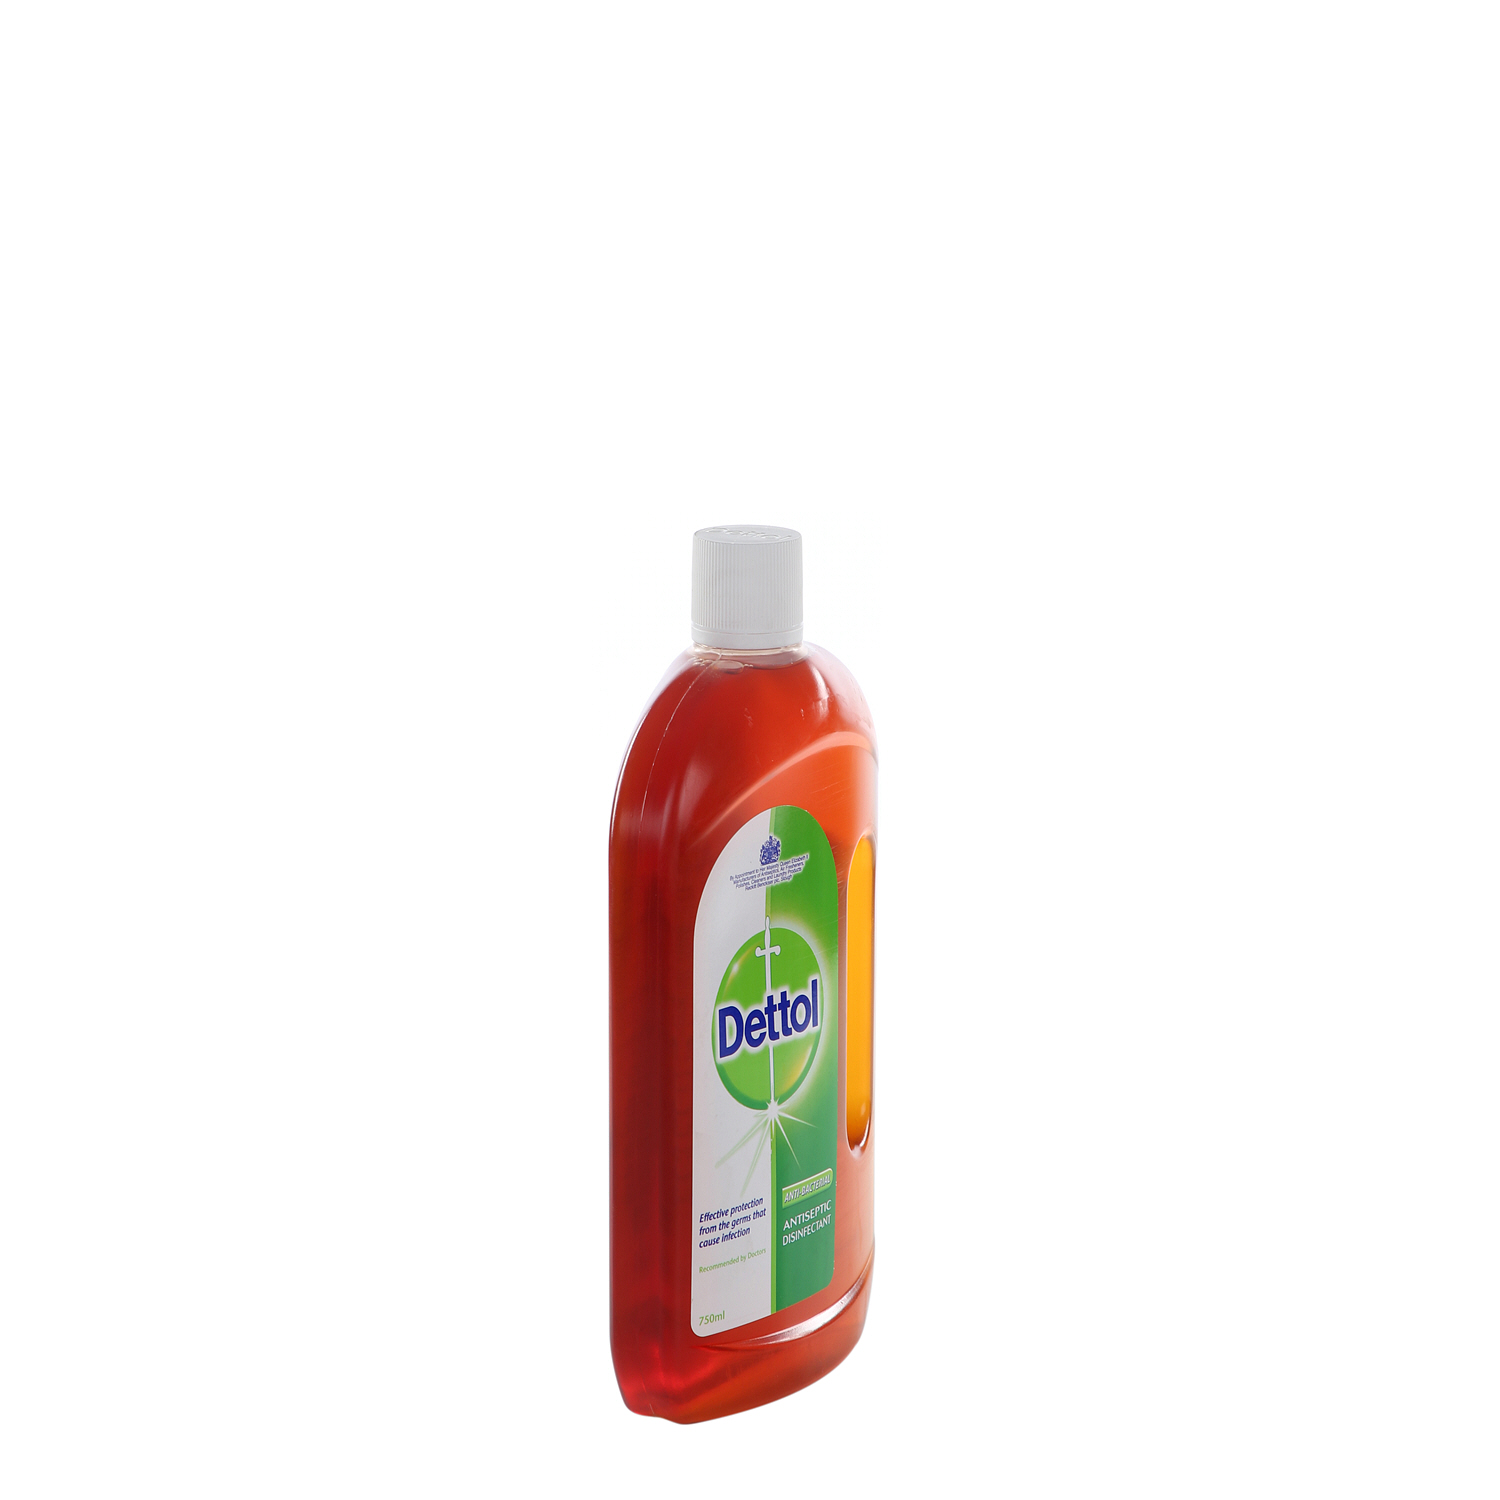 Dettol Anti-Bacterial Disinfectant Liquid 750 ml